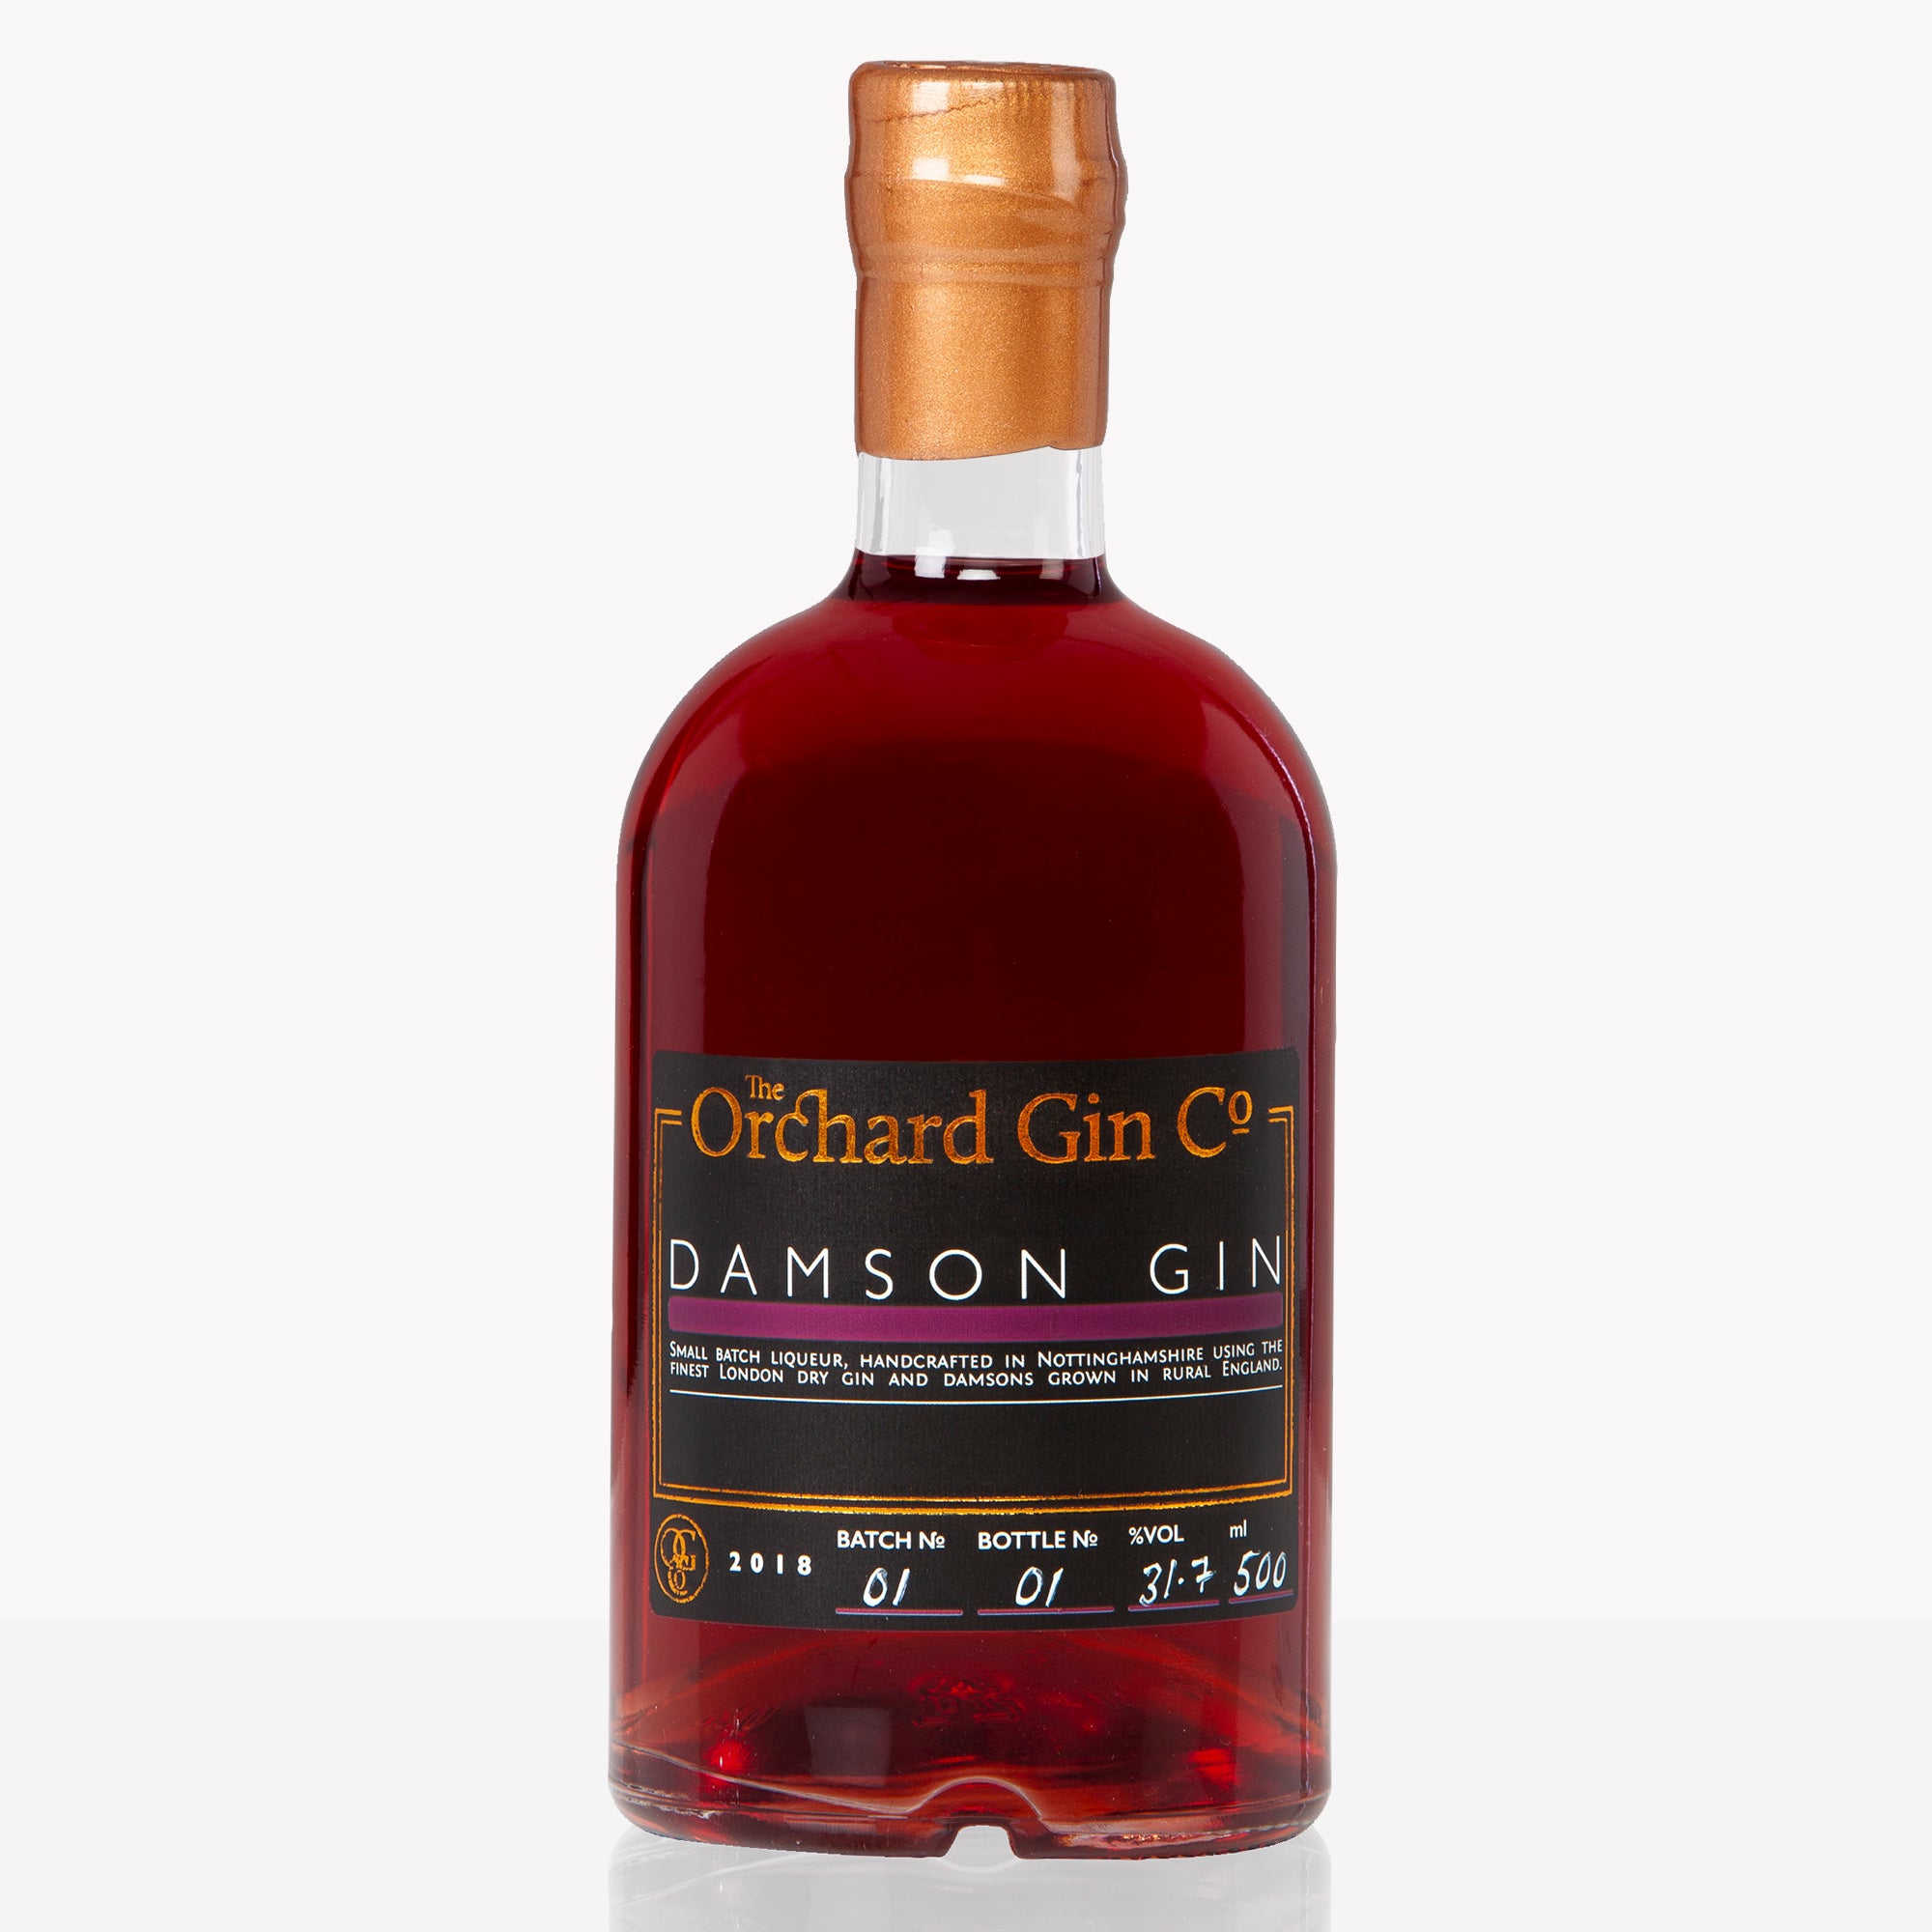 Damson Gin - The Orchard Gin Co